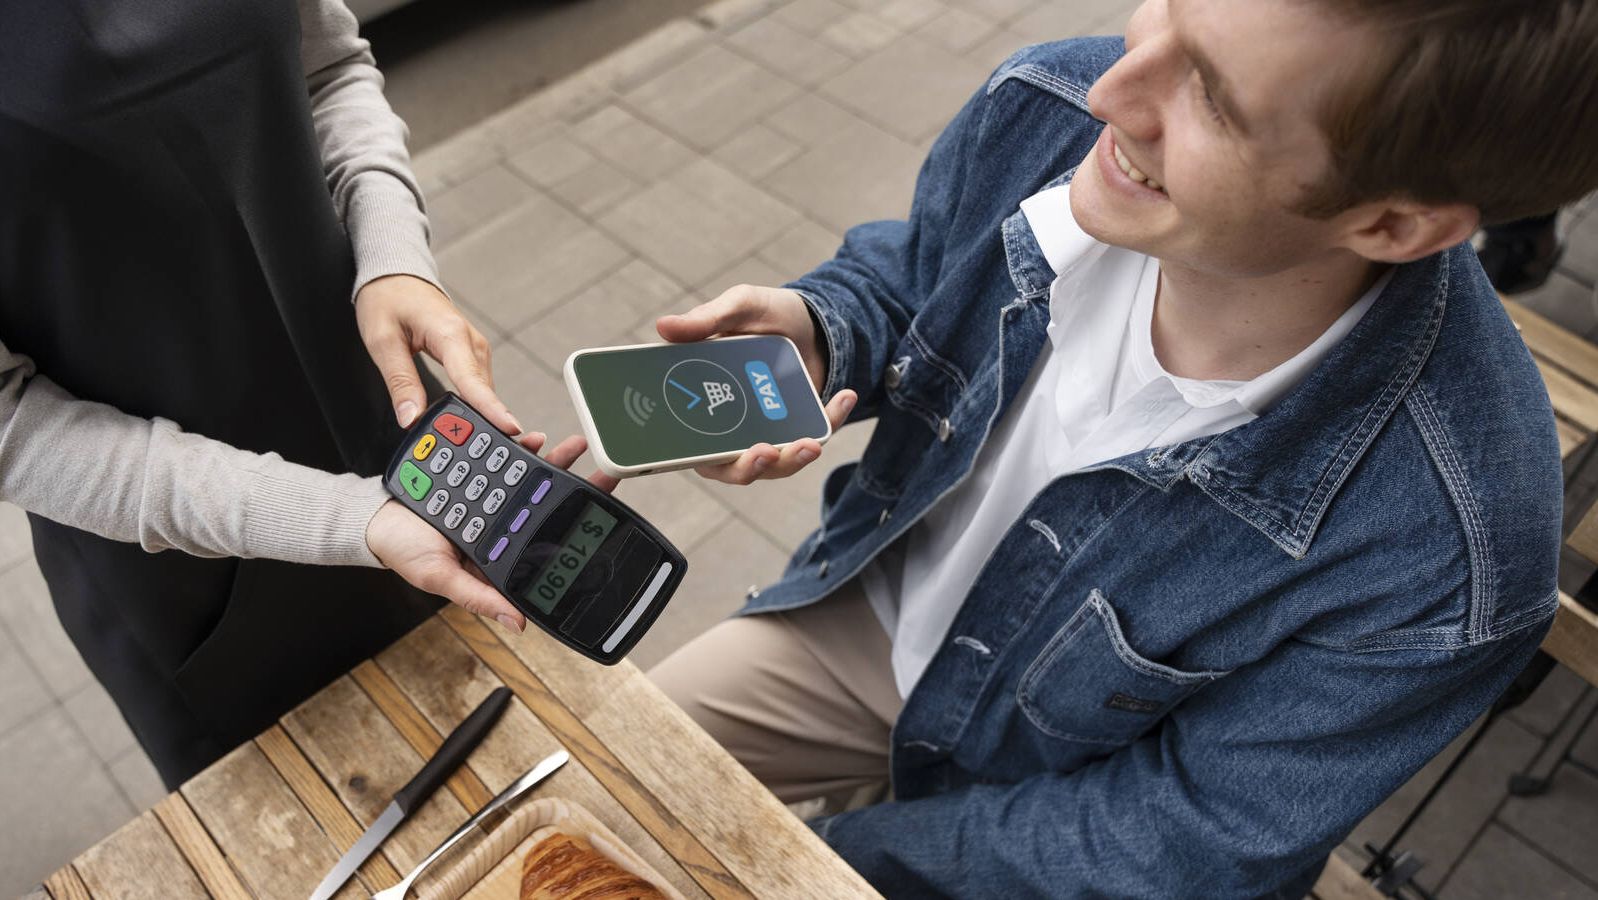 Crecen los pagos con smartphone, ¿está preparado tu negocio?